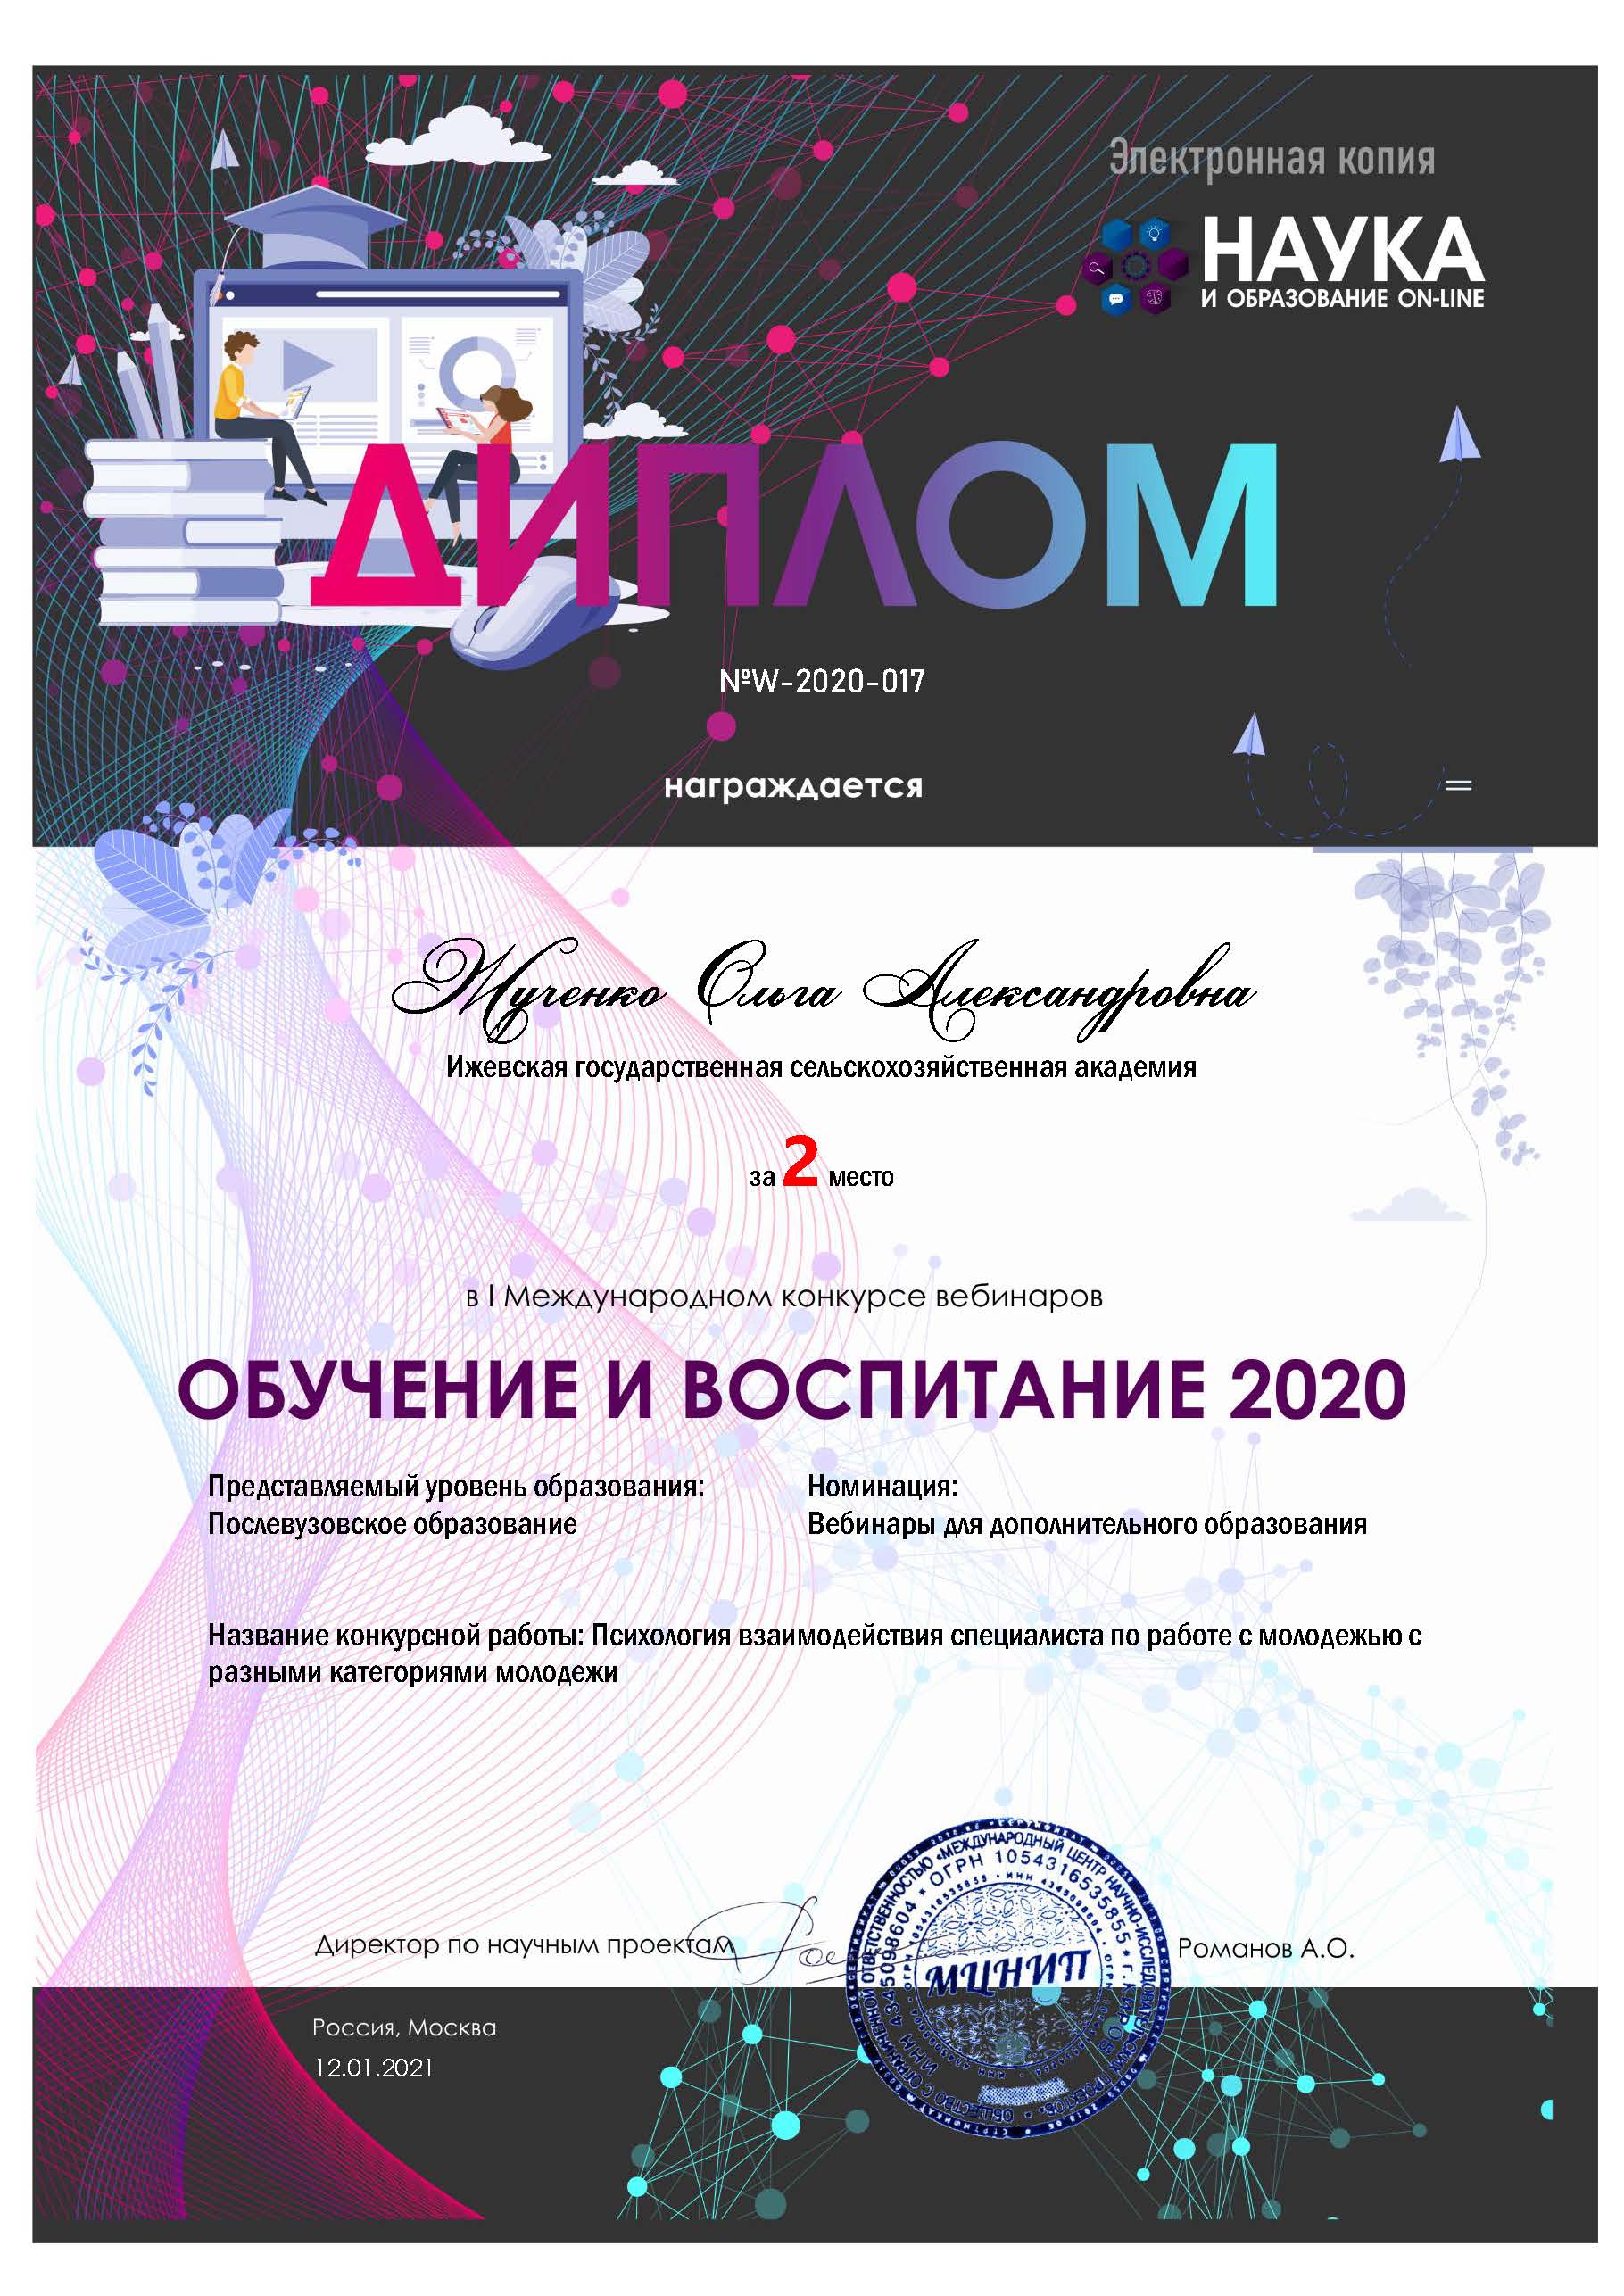 W 2020 Zhuchenko